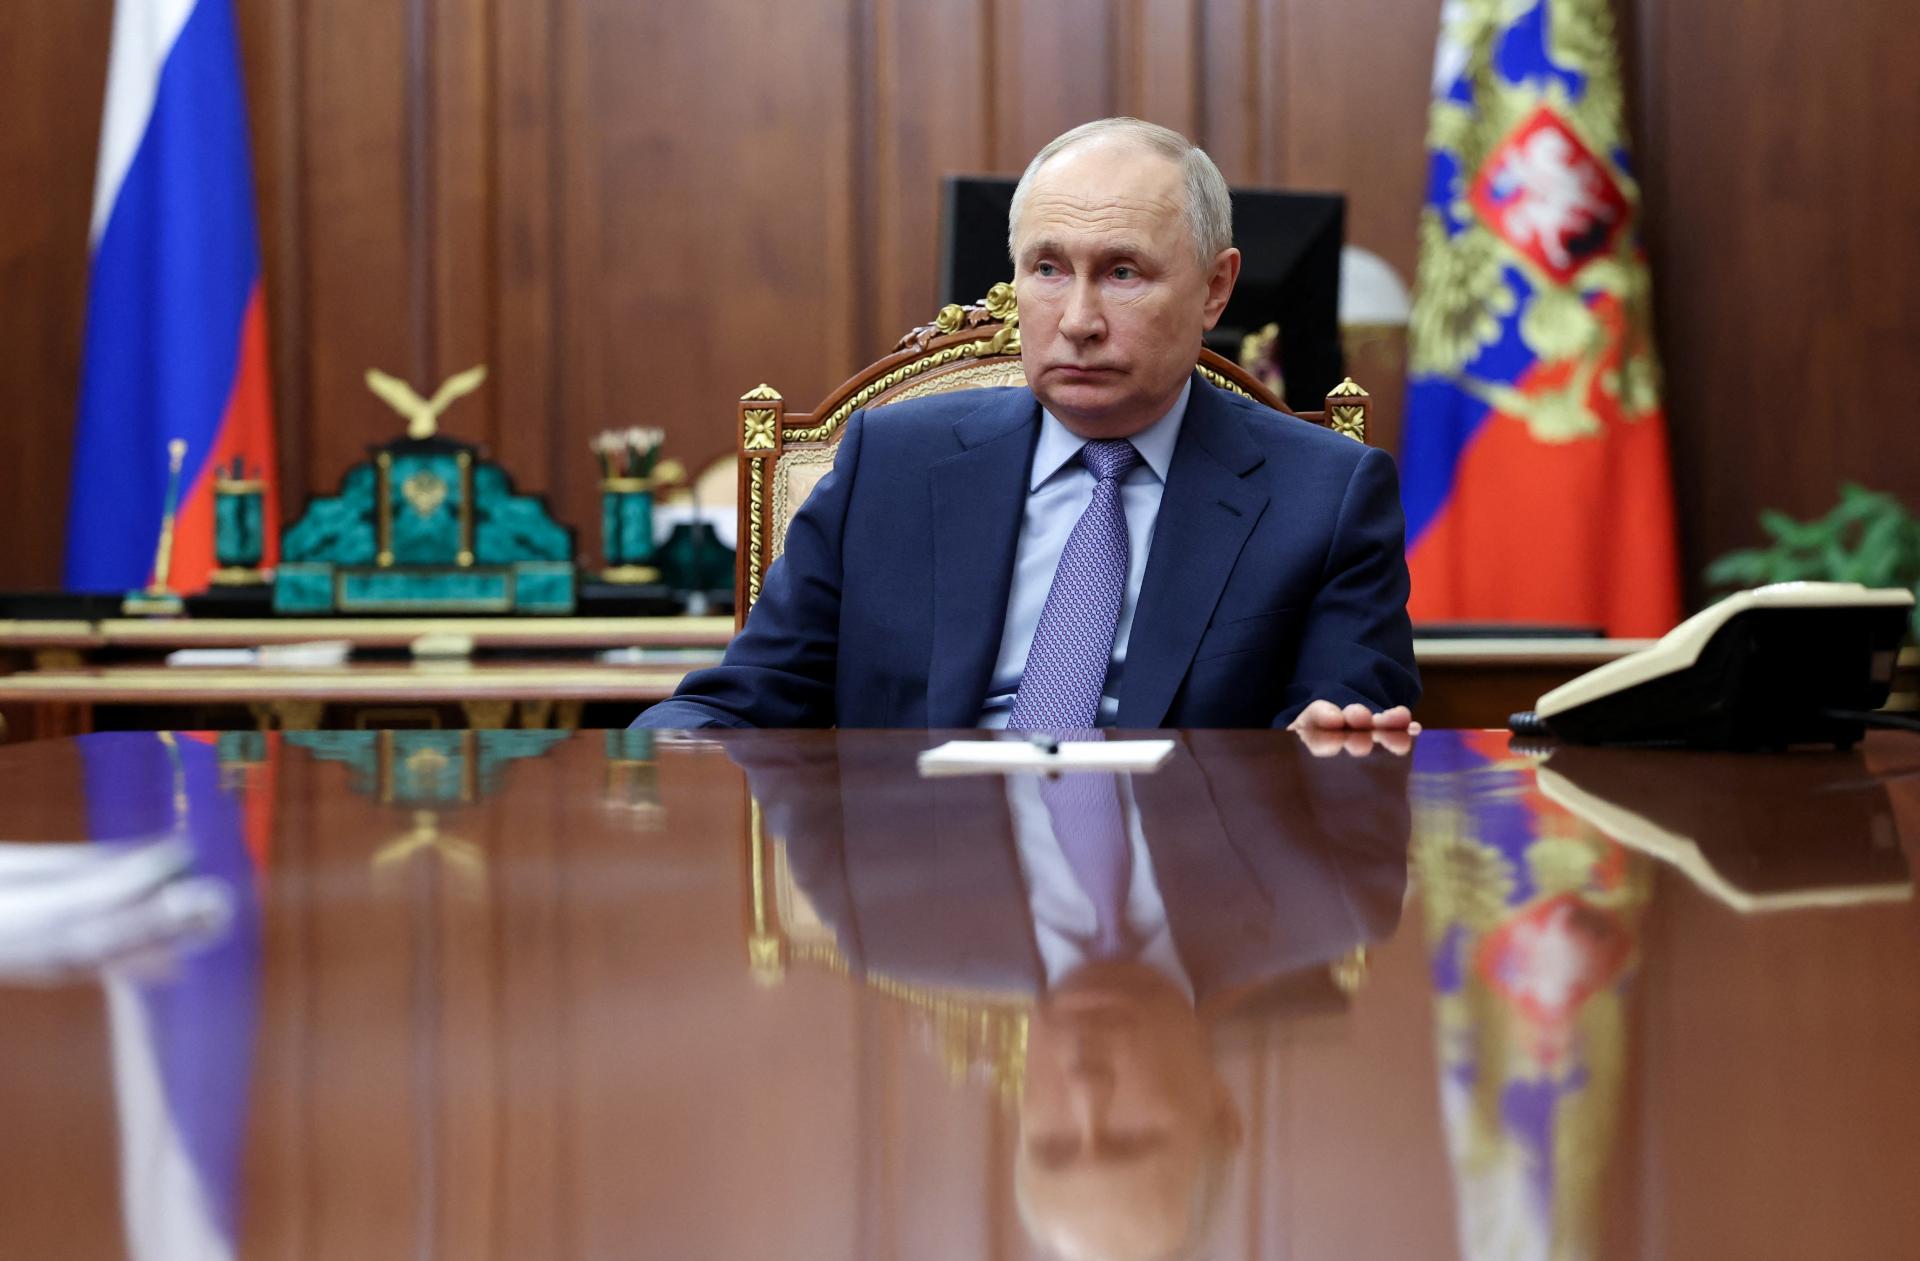 Skrytá vo filmoch. Kremeľ platí neziskovým organizáciám značné sumy za šírenie propagandy, tvrdí Kyjev